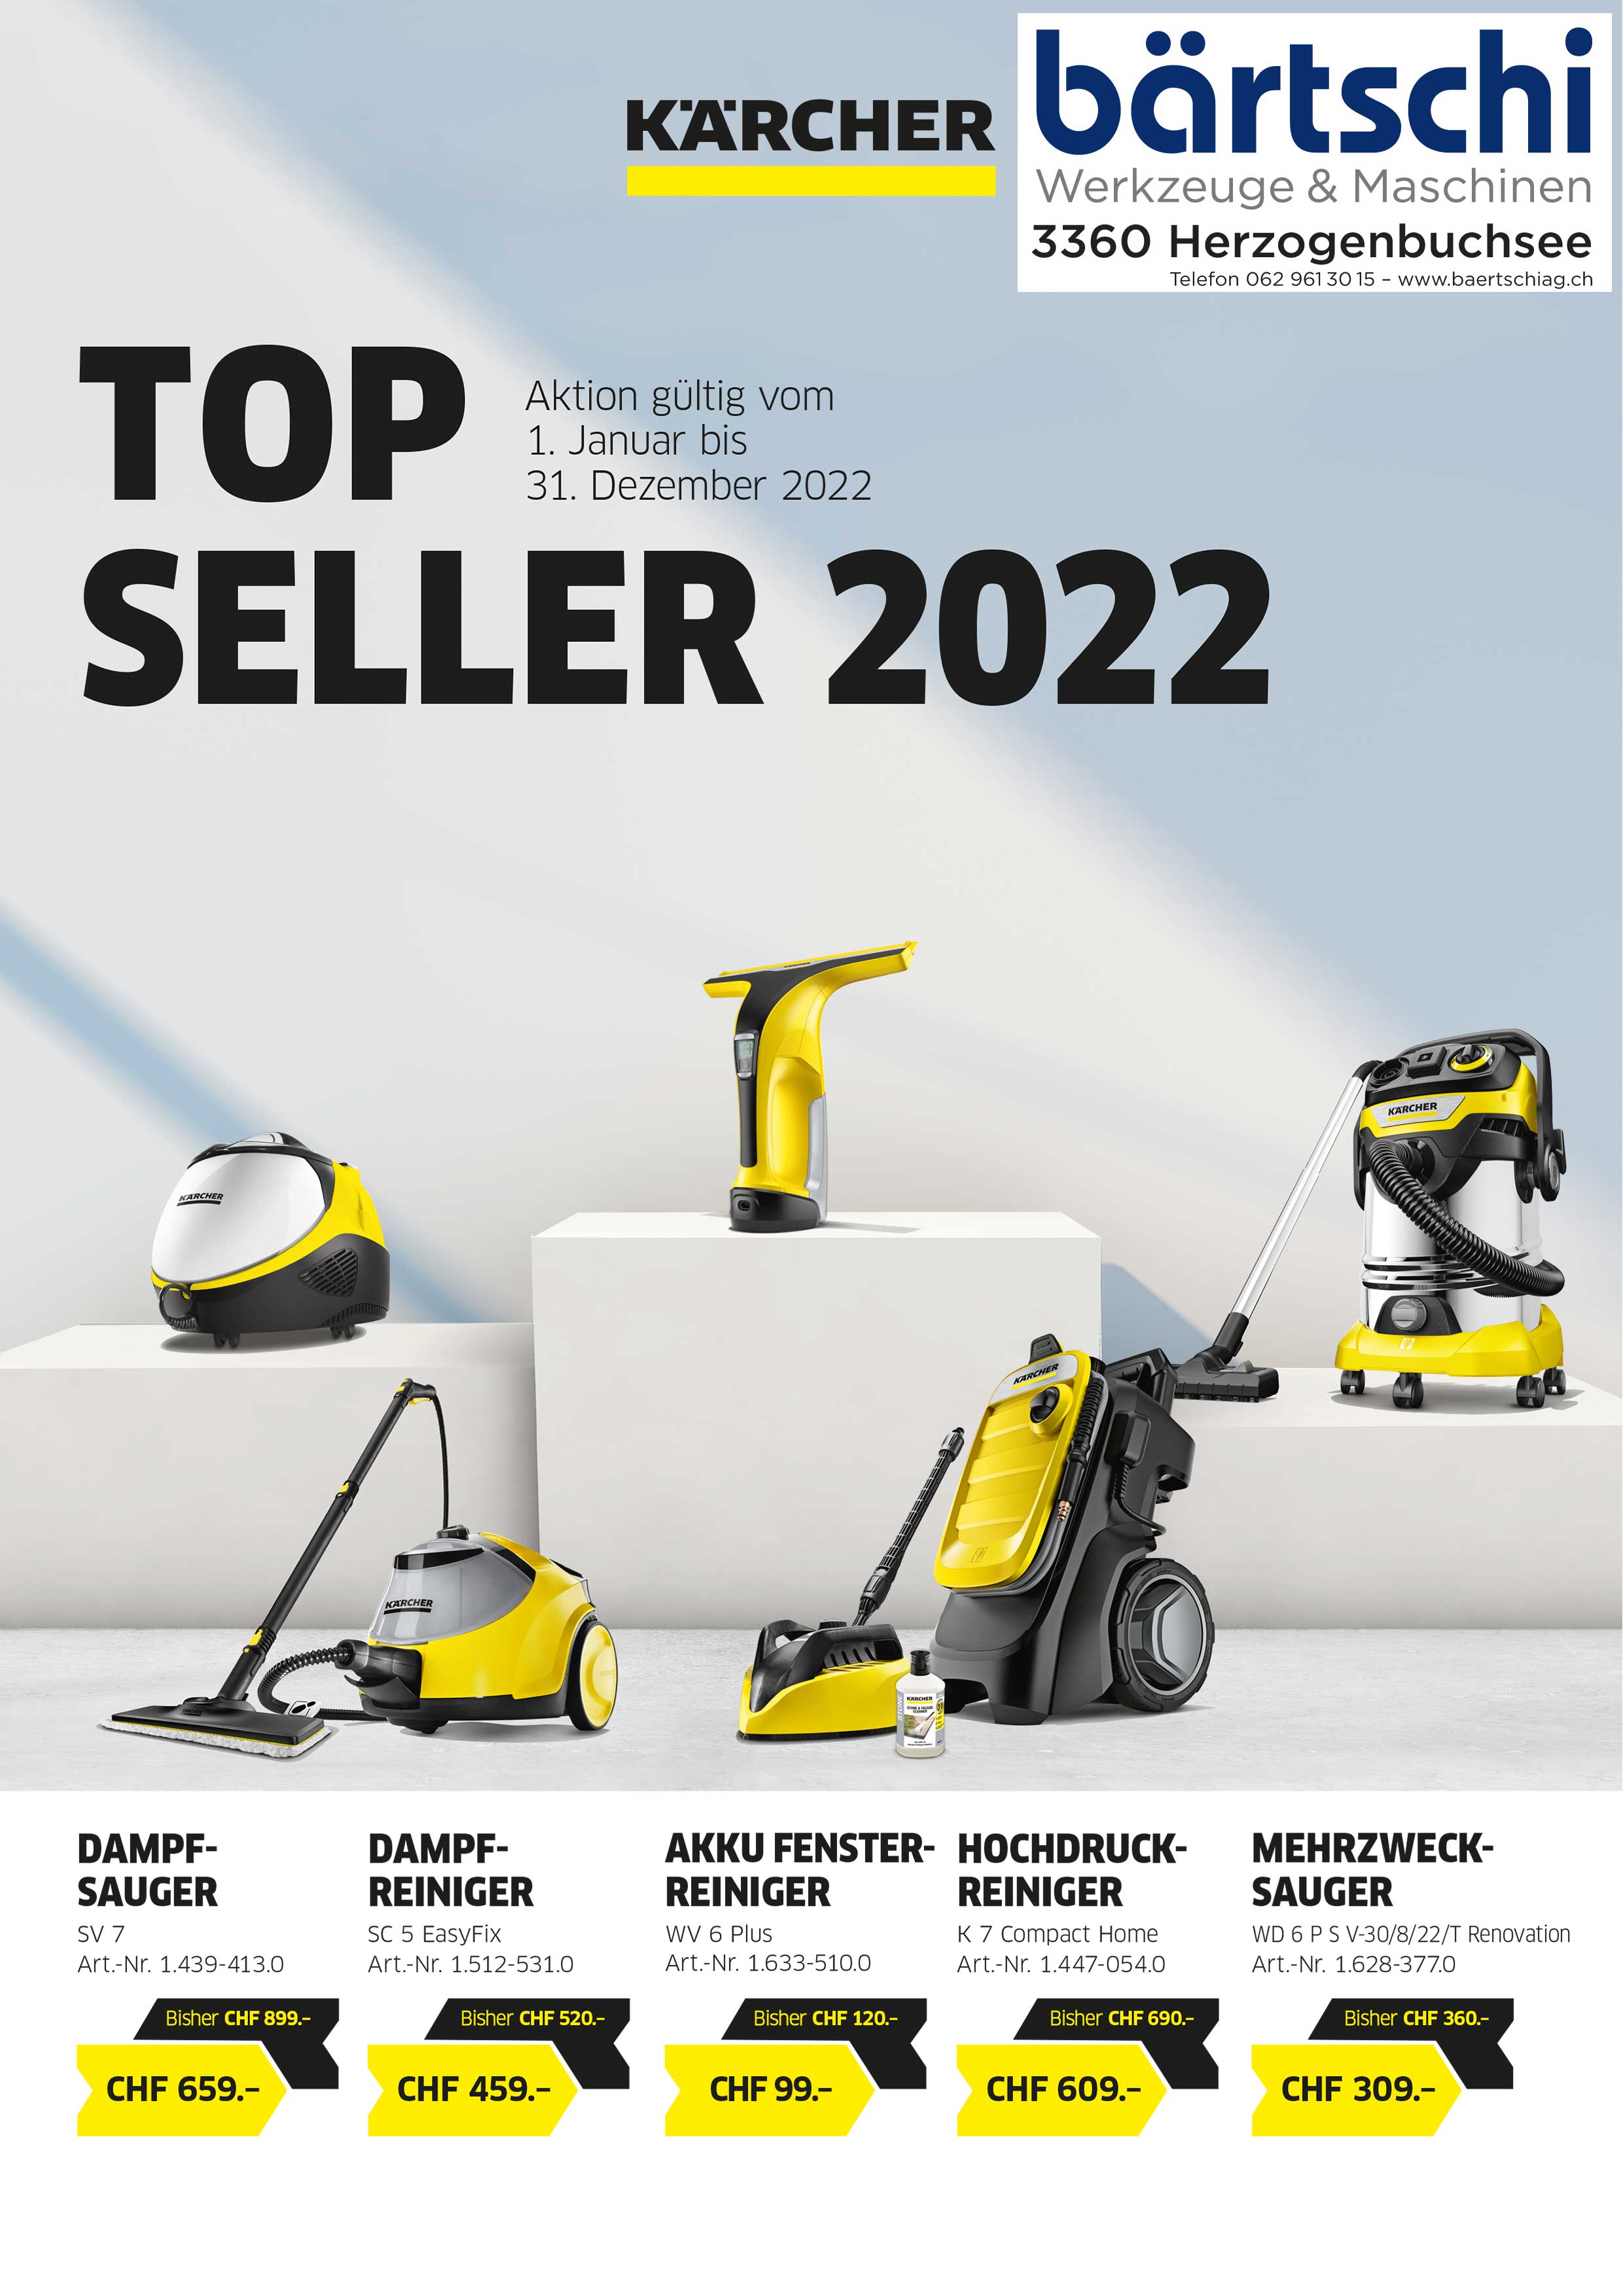 Kärcher Topseller 2022 - HOME & GARDEN